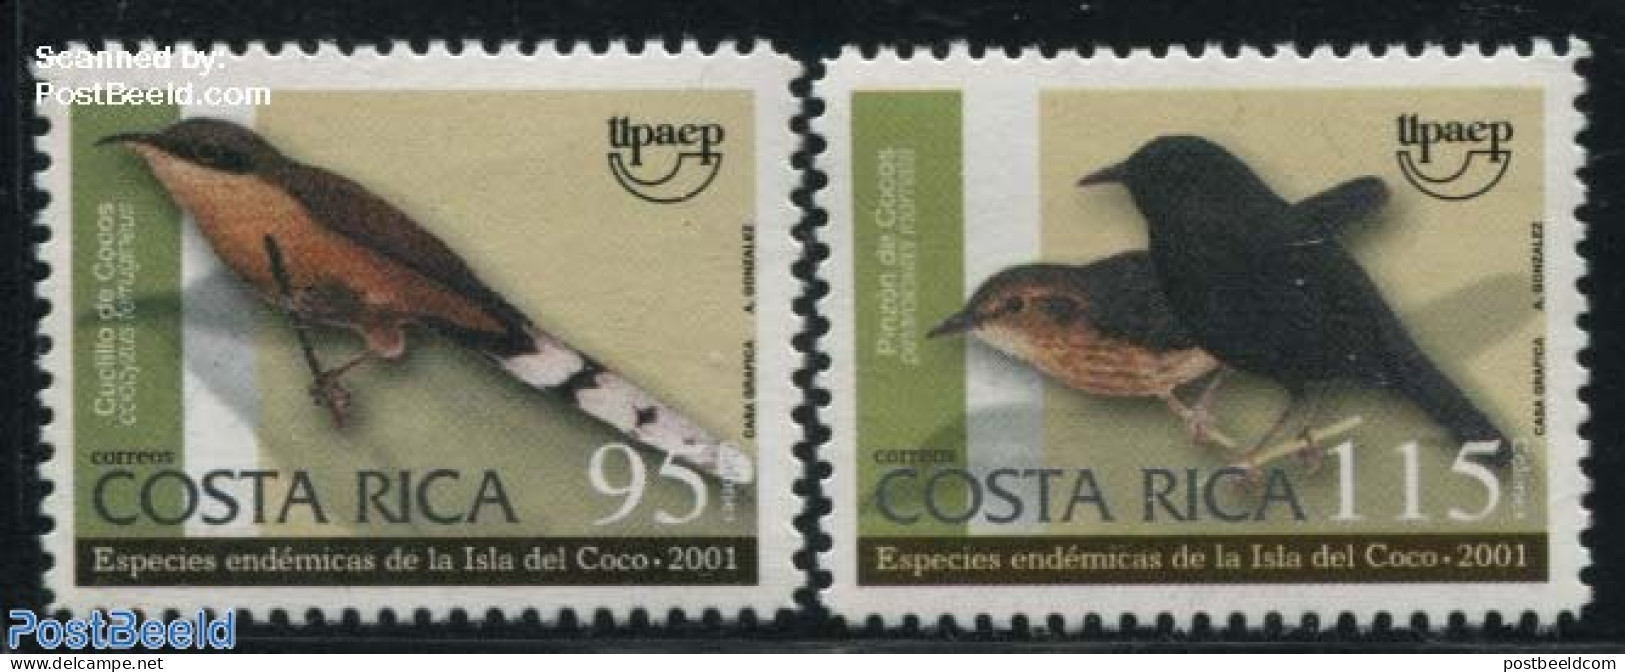 Costa Rica 2001 UPAEP, Birds 2v, Mint NH, Nature - Birds - U.P.A.E. - Costa Rica